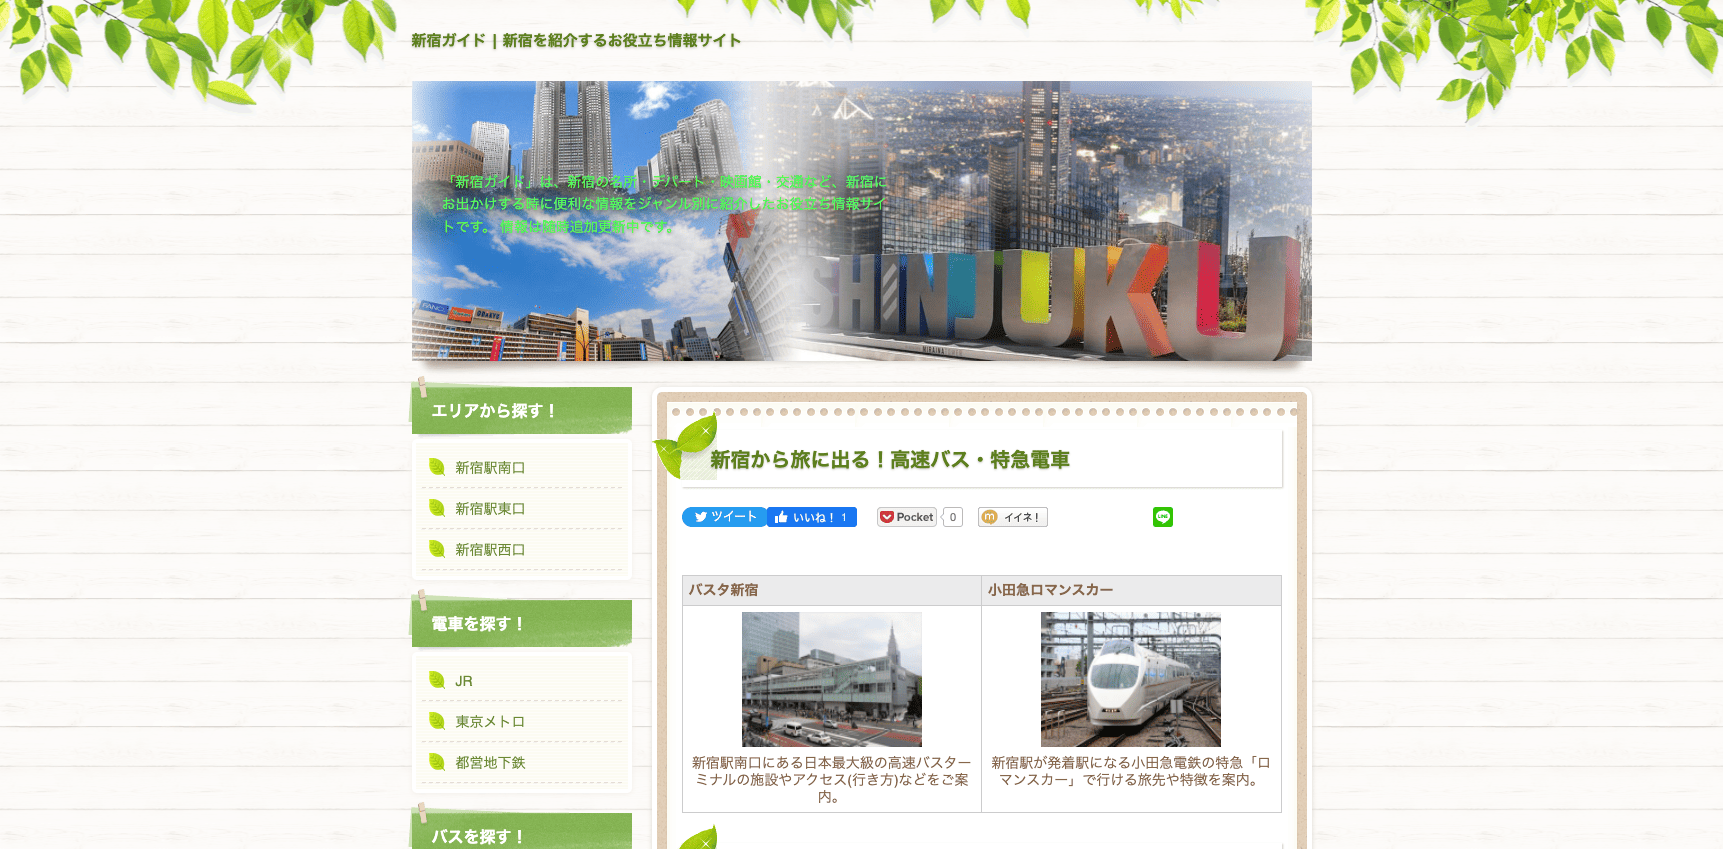 「新宿ガイド」のTOPページキャプチャ画像